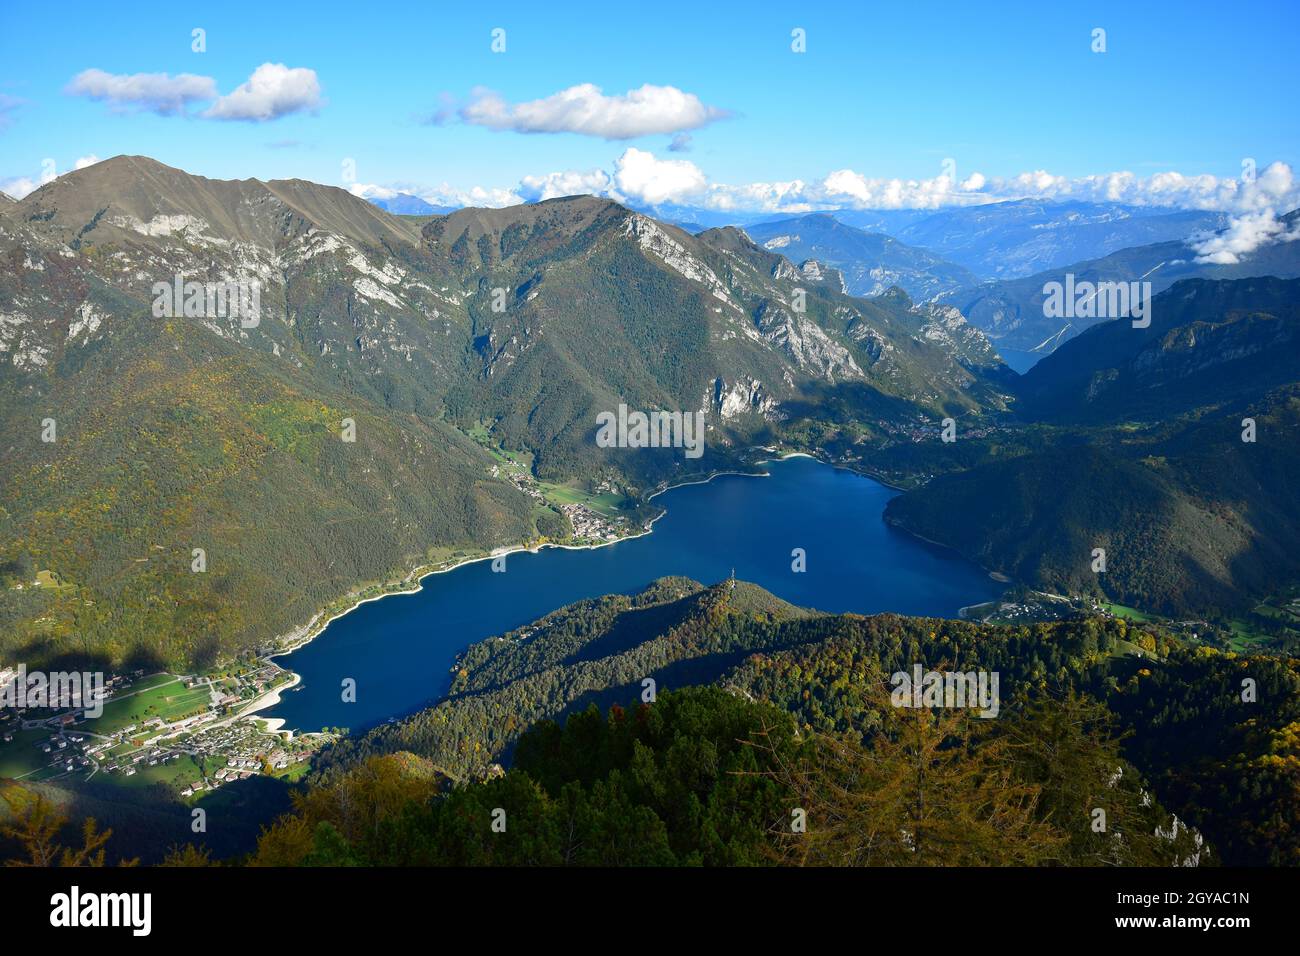 Magnifique lac de Ledro et les montagnes environnantes. Vue depuis le mont Corno lors d'une belle journée d'automne claire. Trentin, Italie. Banque D'Images